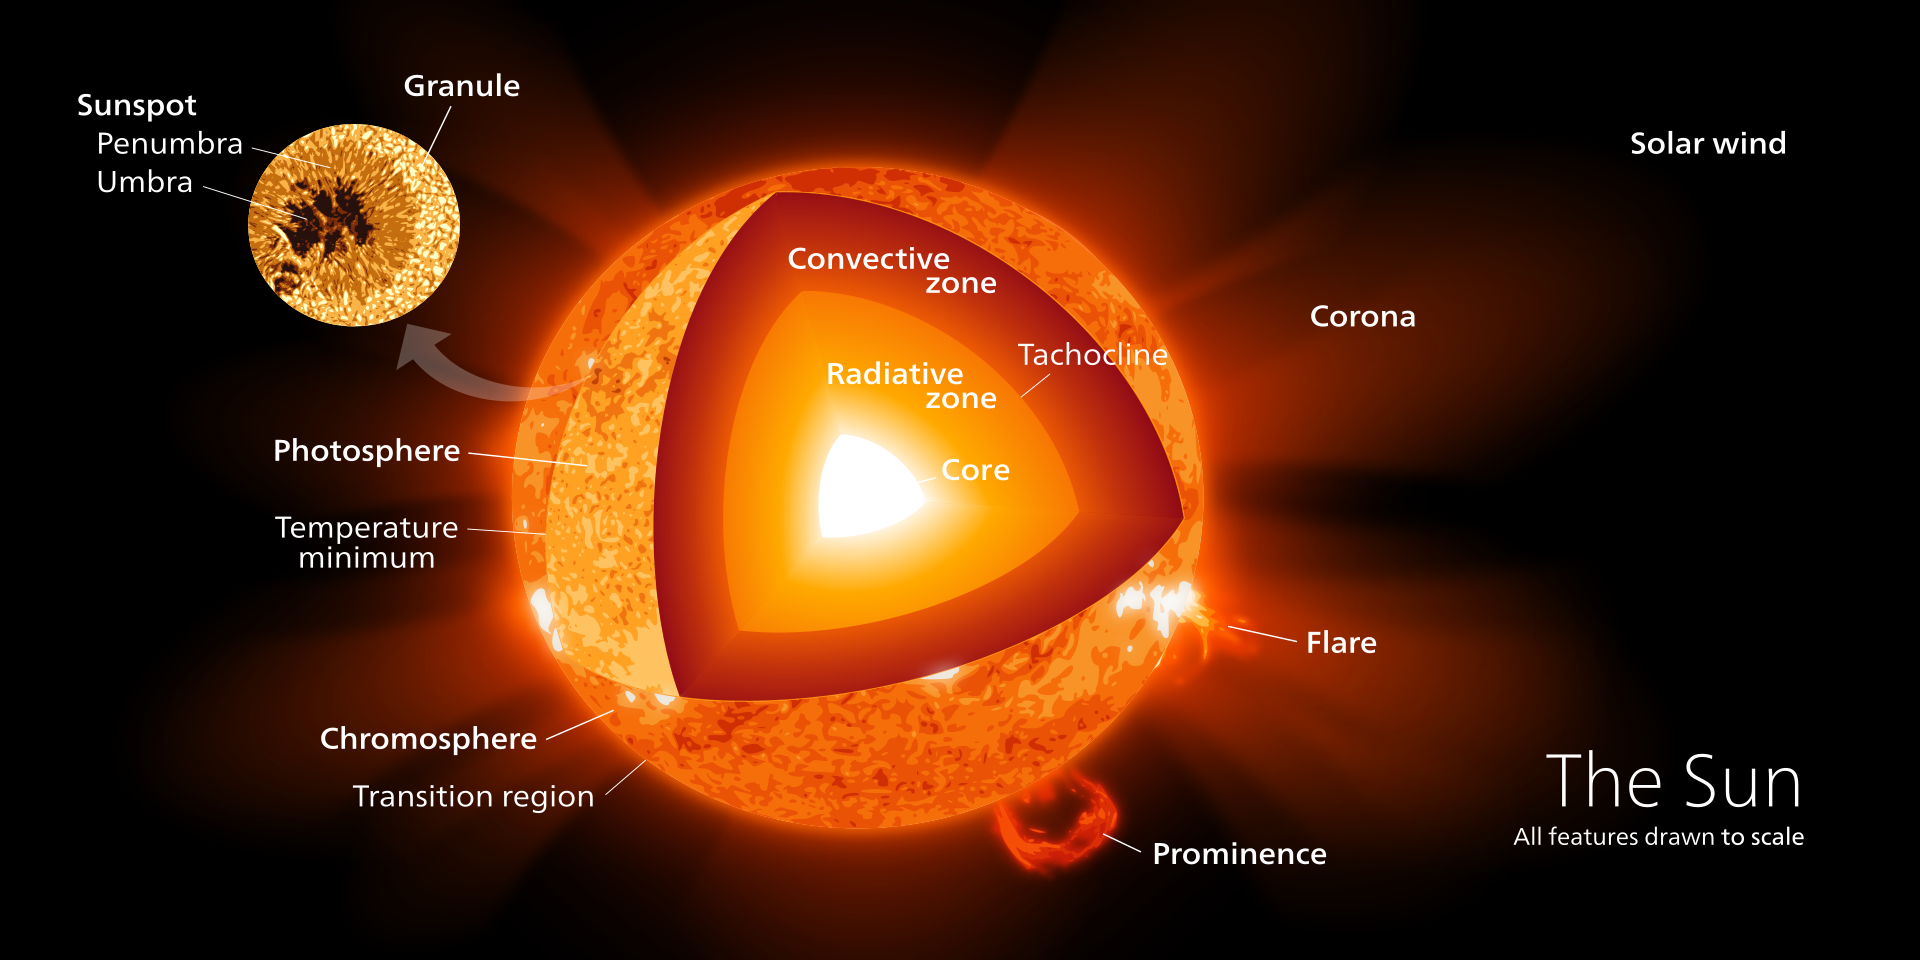 출처 : wiki 백과(https://en.wikipedia.org/wiki/Stellar_structure#/media/File:Sun_poster.svg)